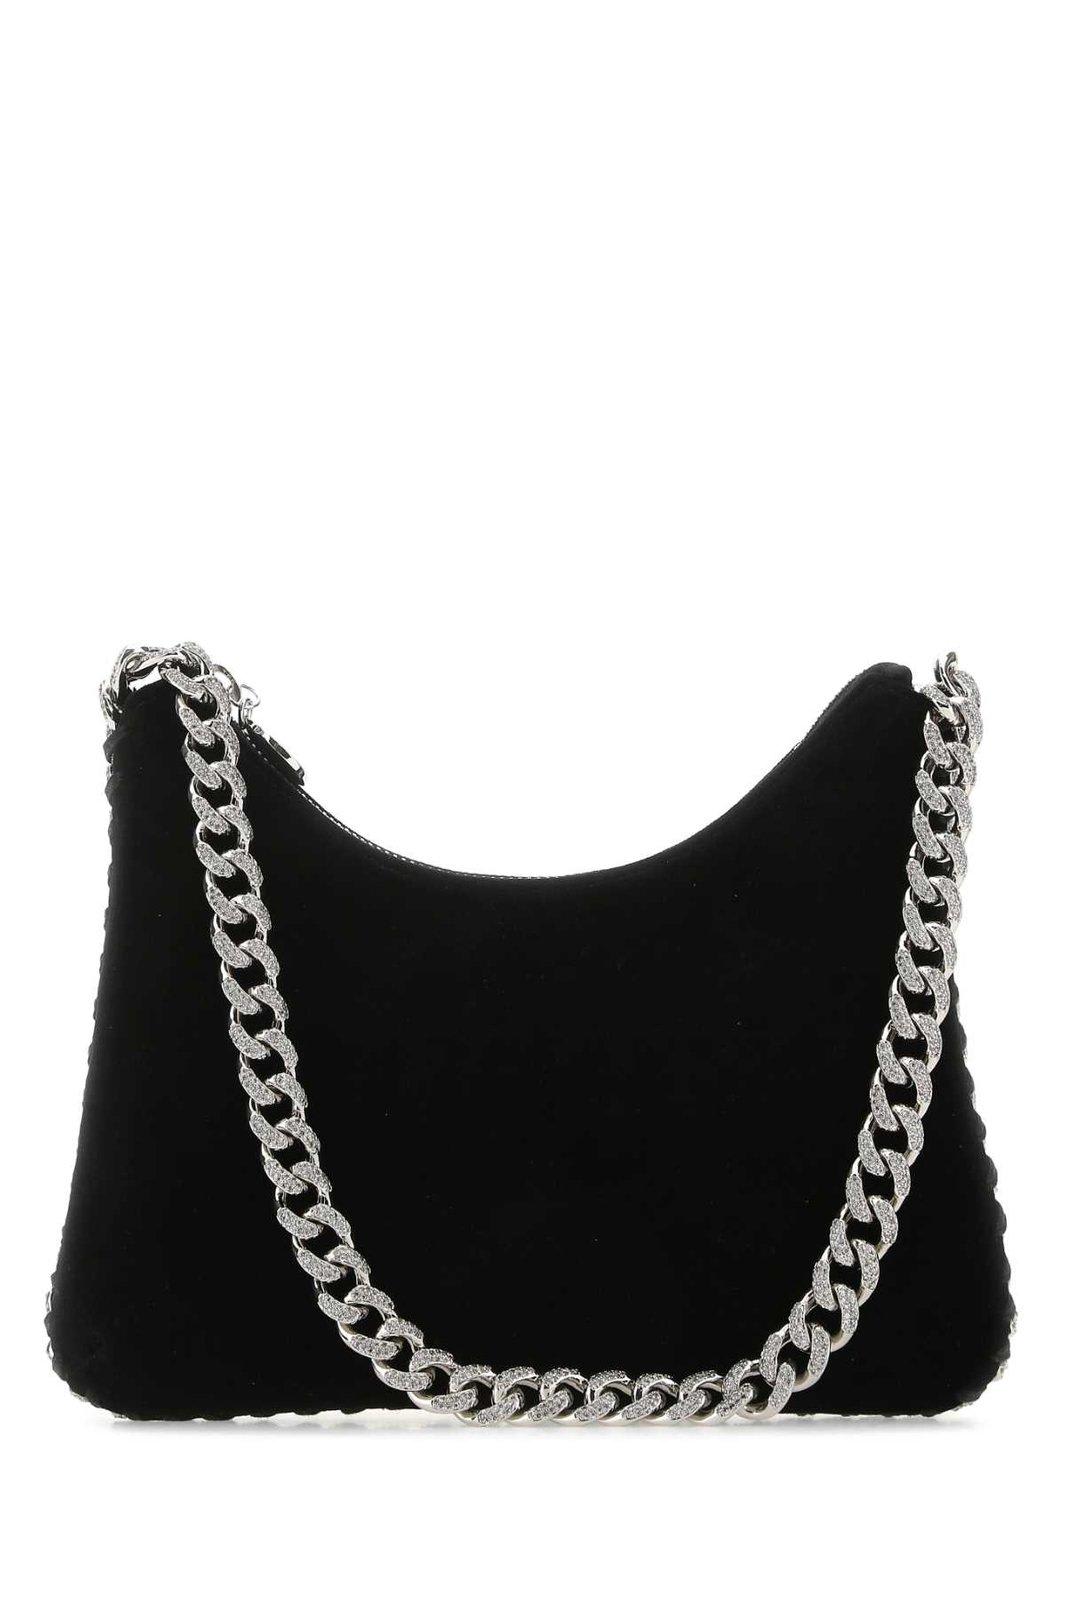 Stella McCartney Falabella Embellished Chain Shoulder Bag